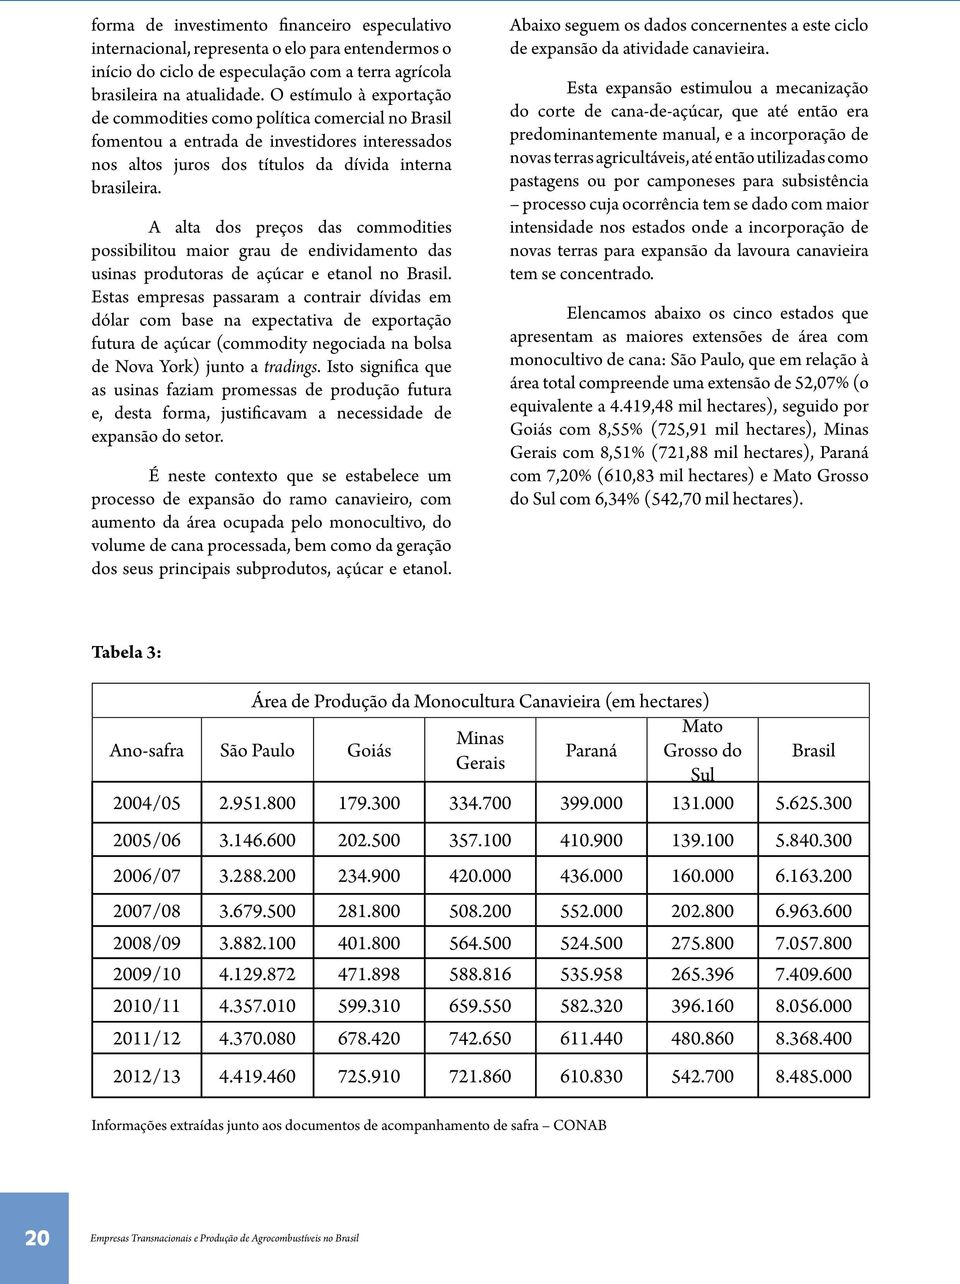 A alta dos preços das commodities possibilitou maior grau de endividamento das usinas produtoras de açúcar e etanol no Brasil.